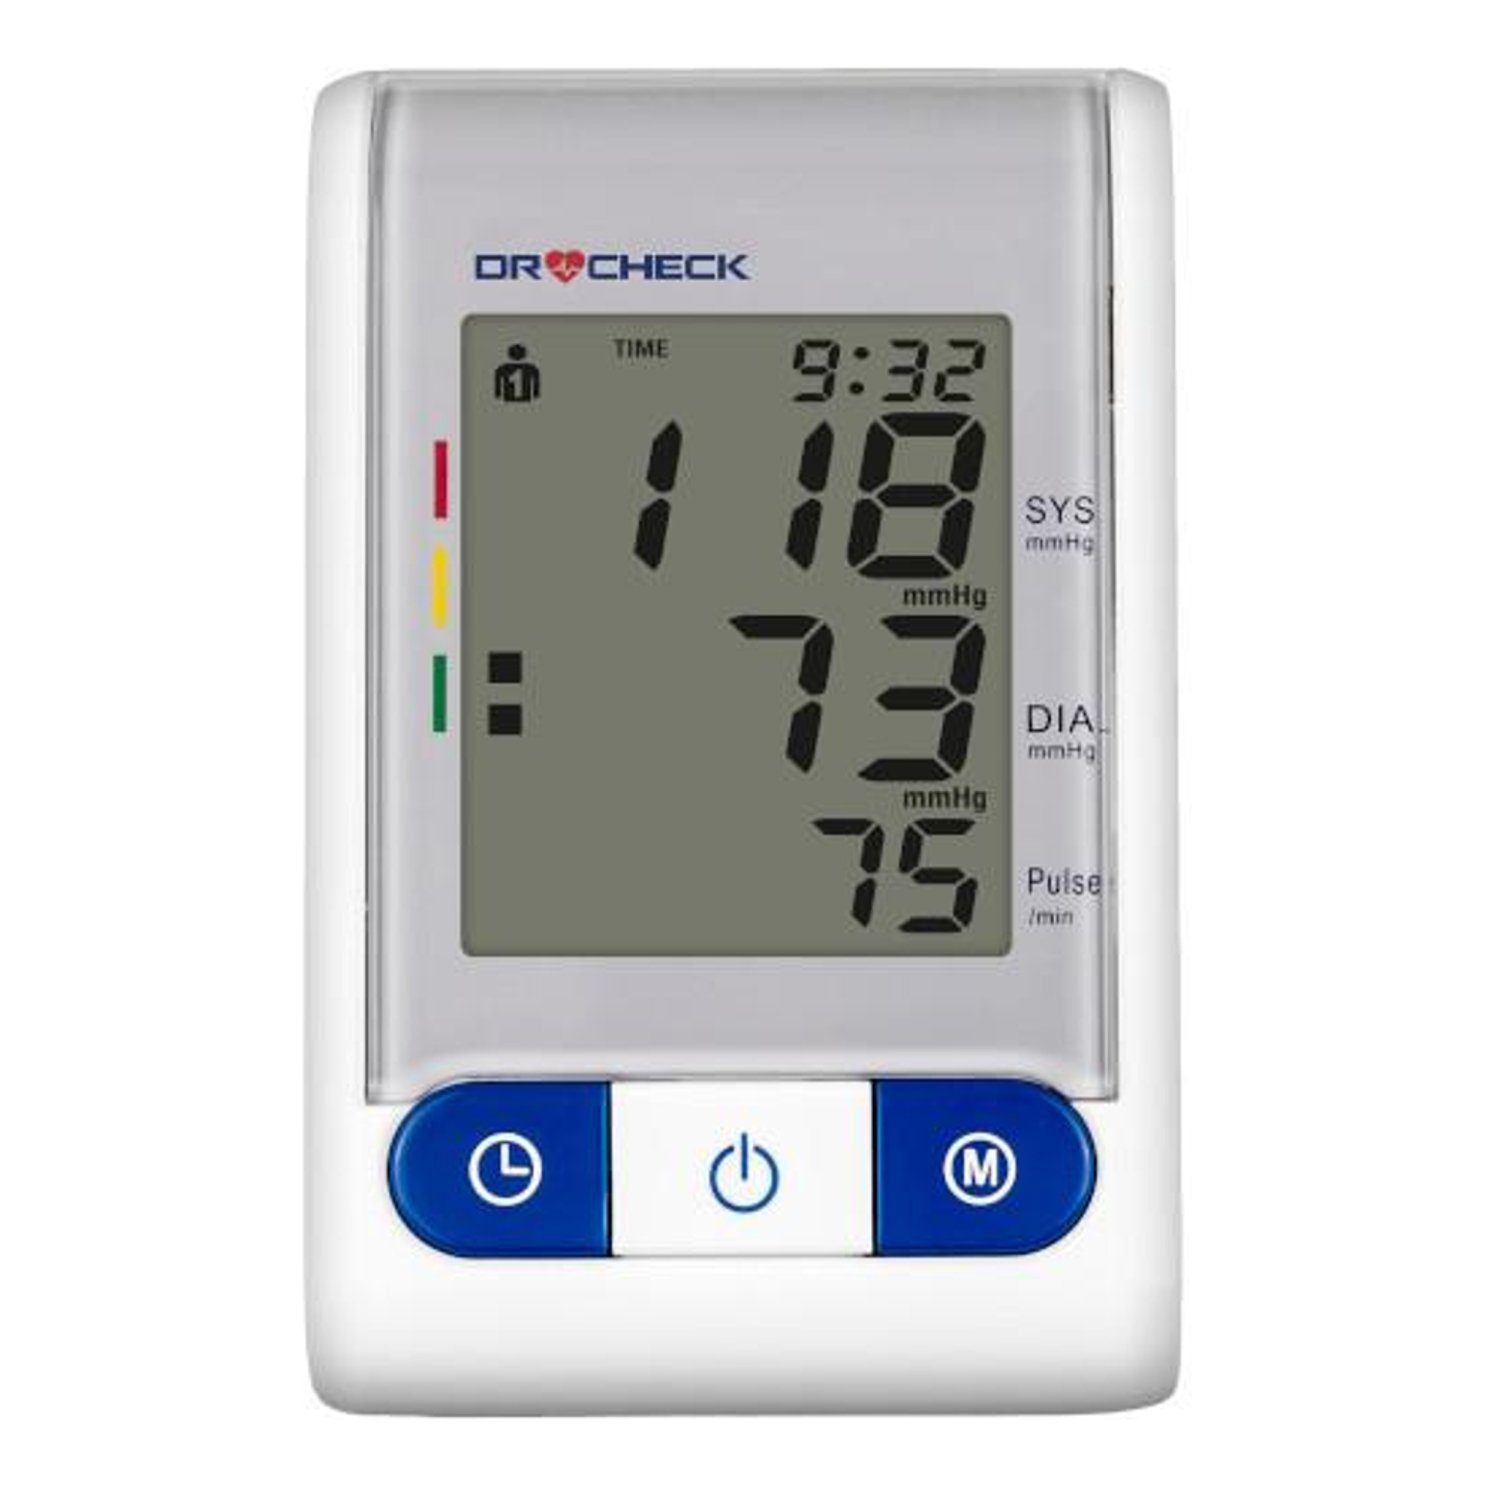 CM-300, Dr Oberarm-Blutdruckmessgerät Check Blutdruckmessgerät Automatisches Oberarm-